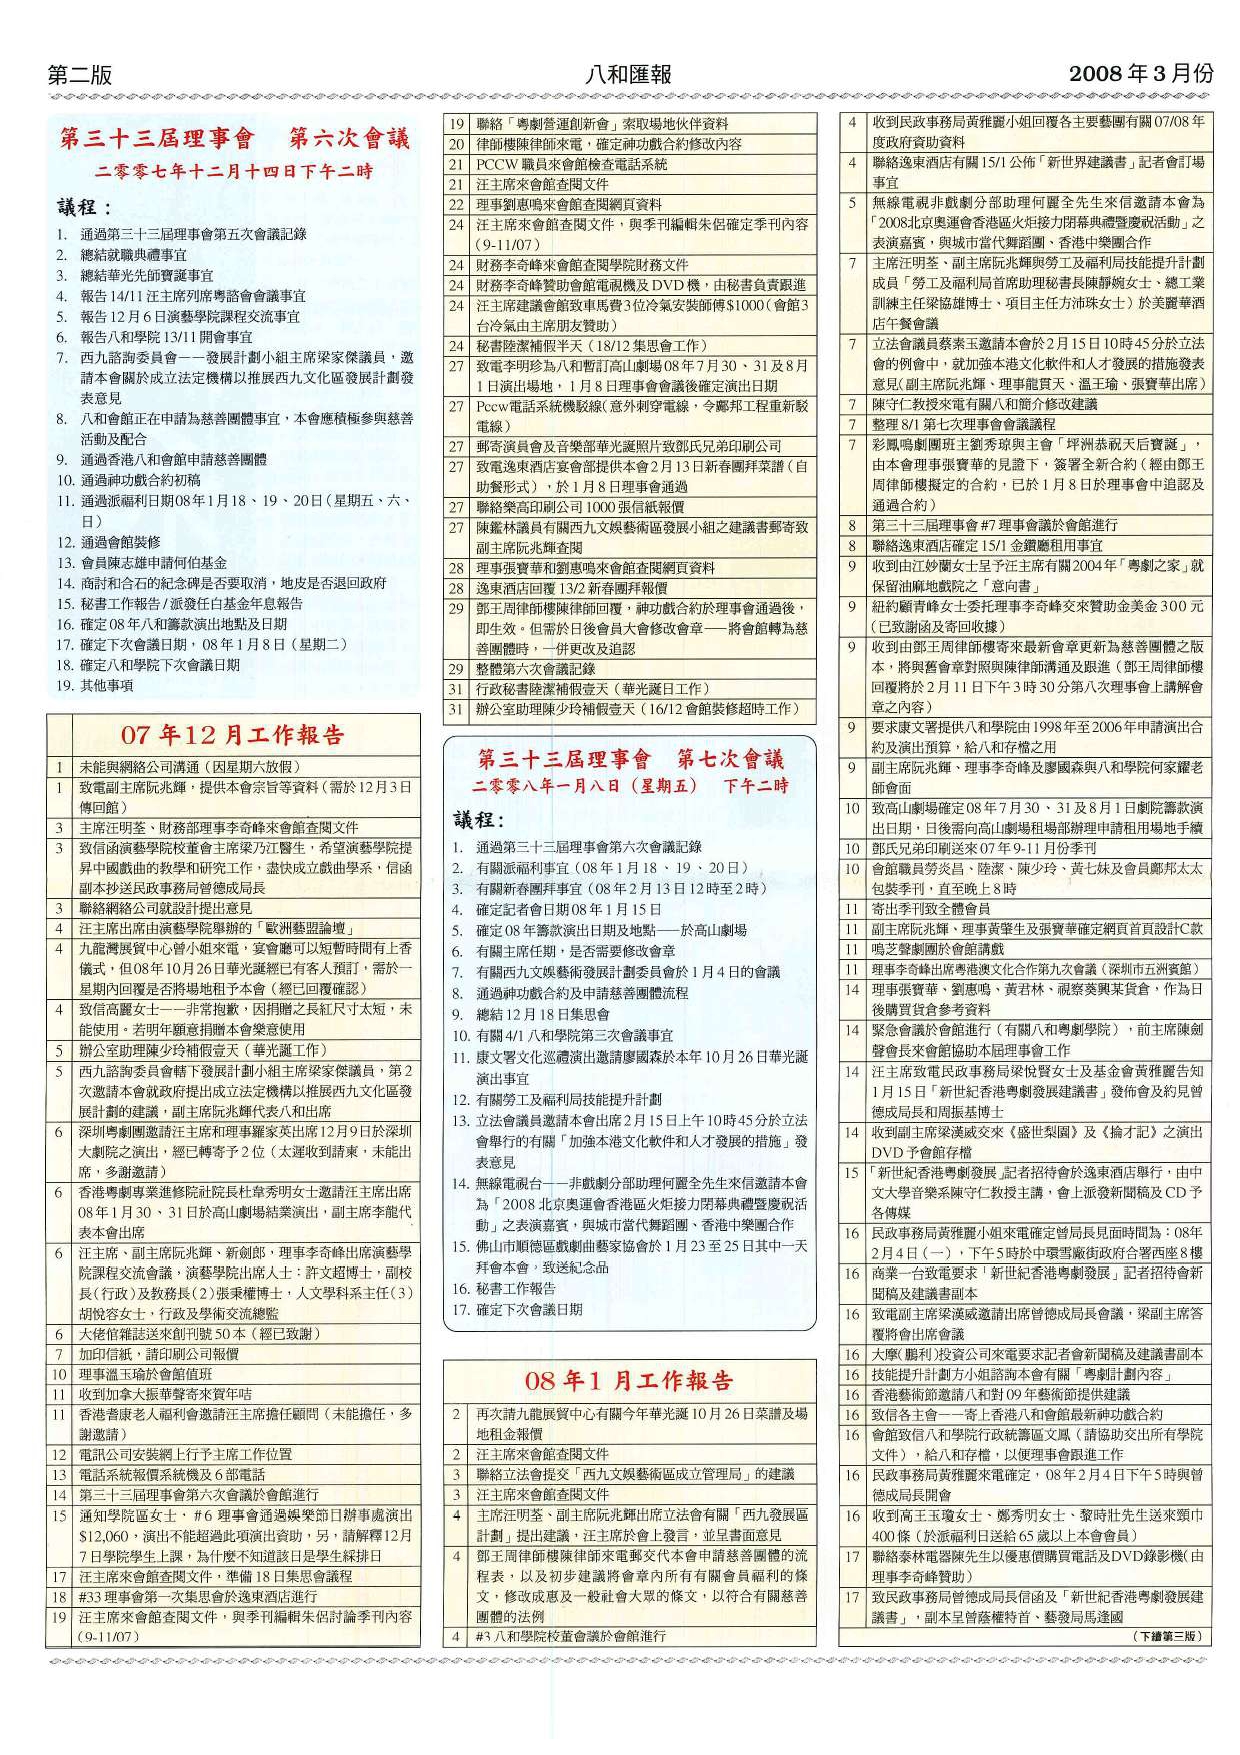 香港八和會館第三十三屆理事會第六至第七次會議議程及辦公室報告（2007年12月至2008年1月）